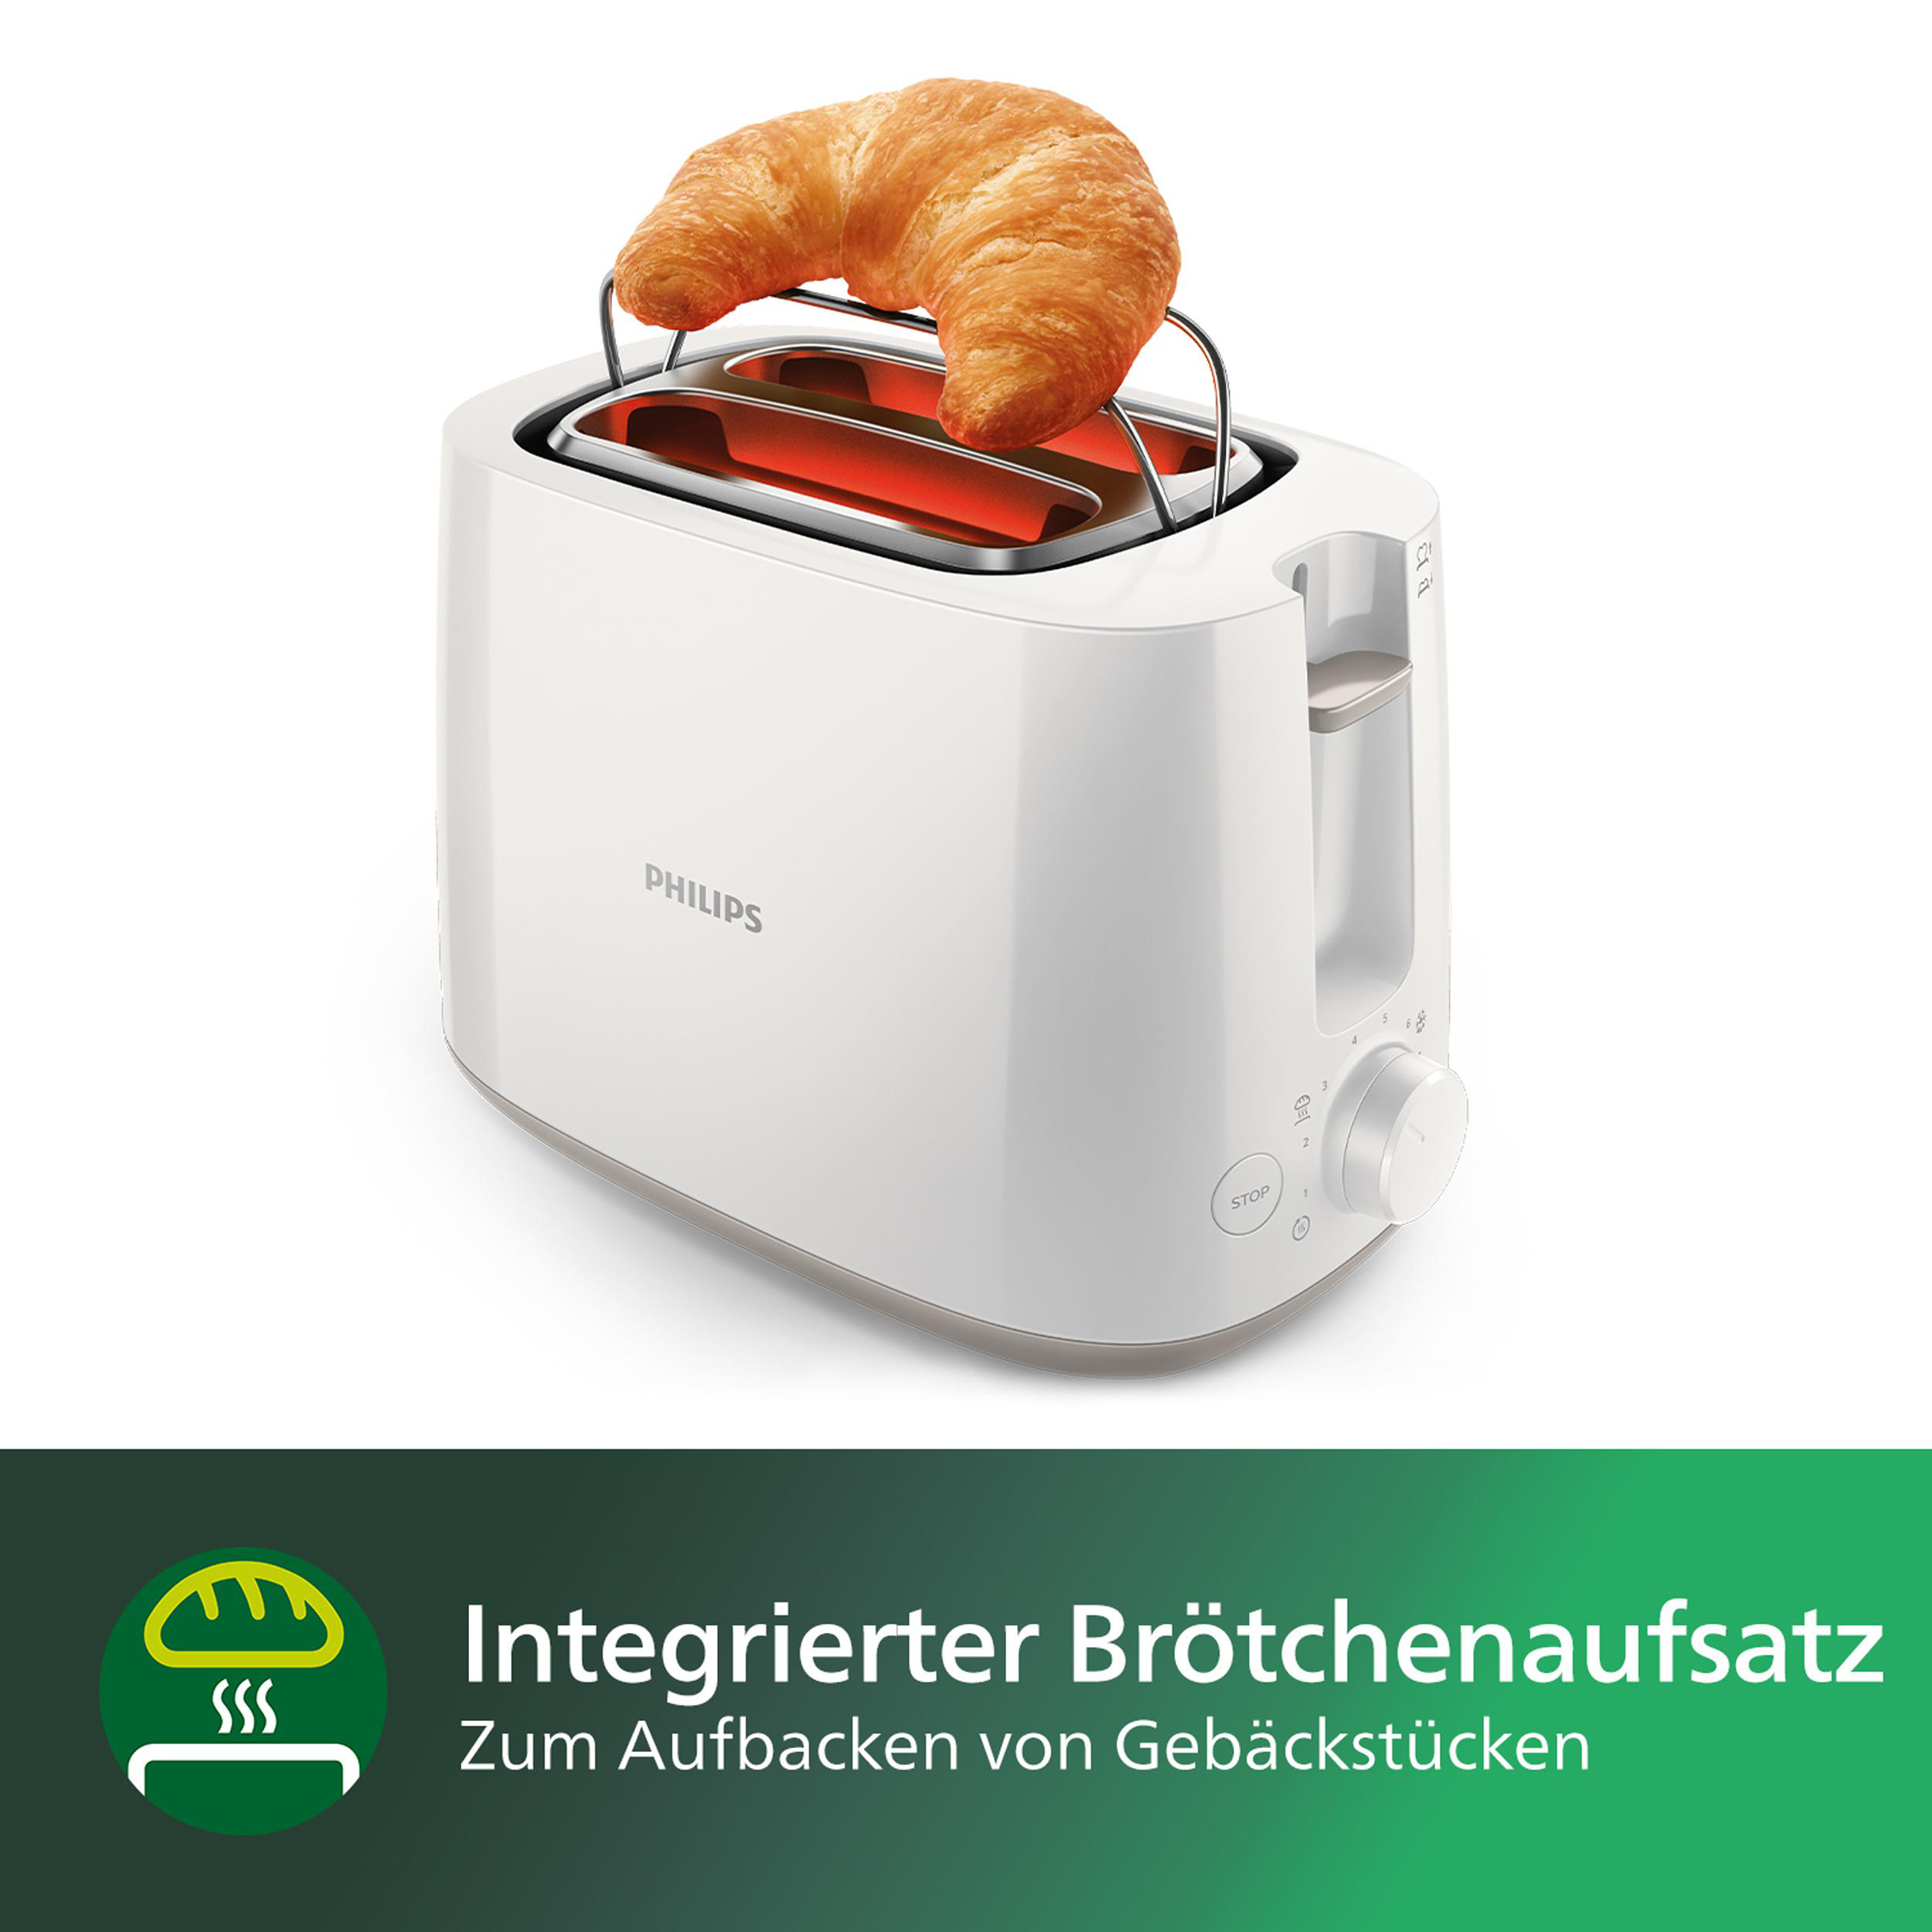 Stufen, Collection HD2581/00 Schlitze: Krümelschublade, Daily Watt, (830 8 PHILIPS Brötchenaufsatz Toaster Weiß 2)